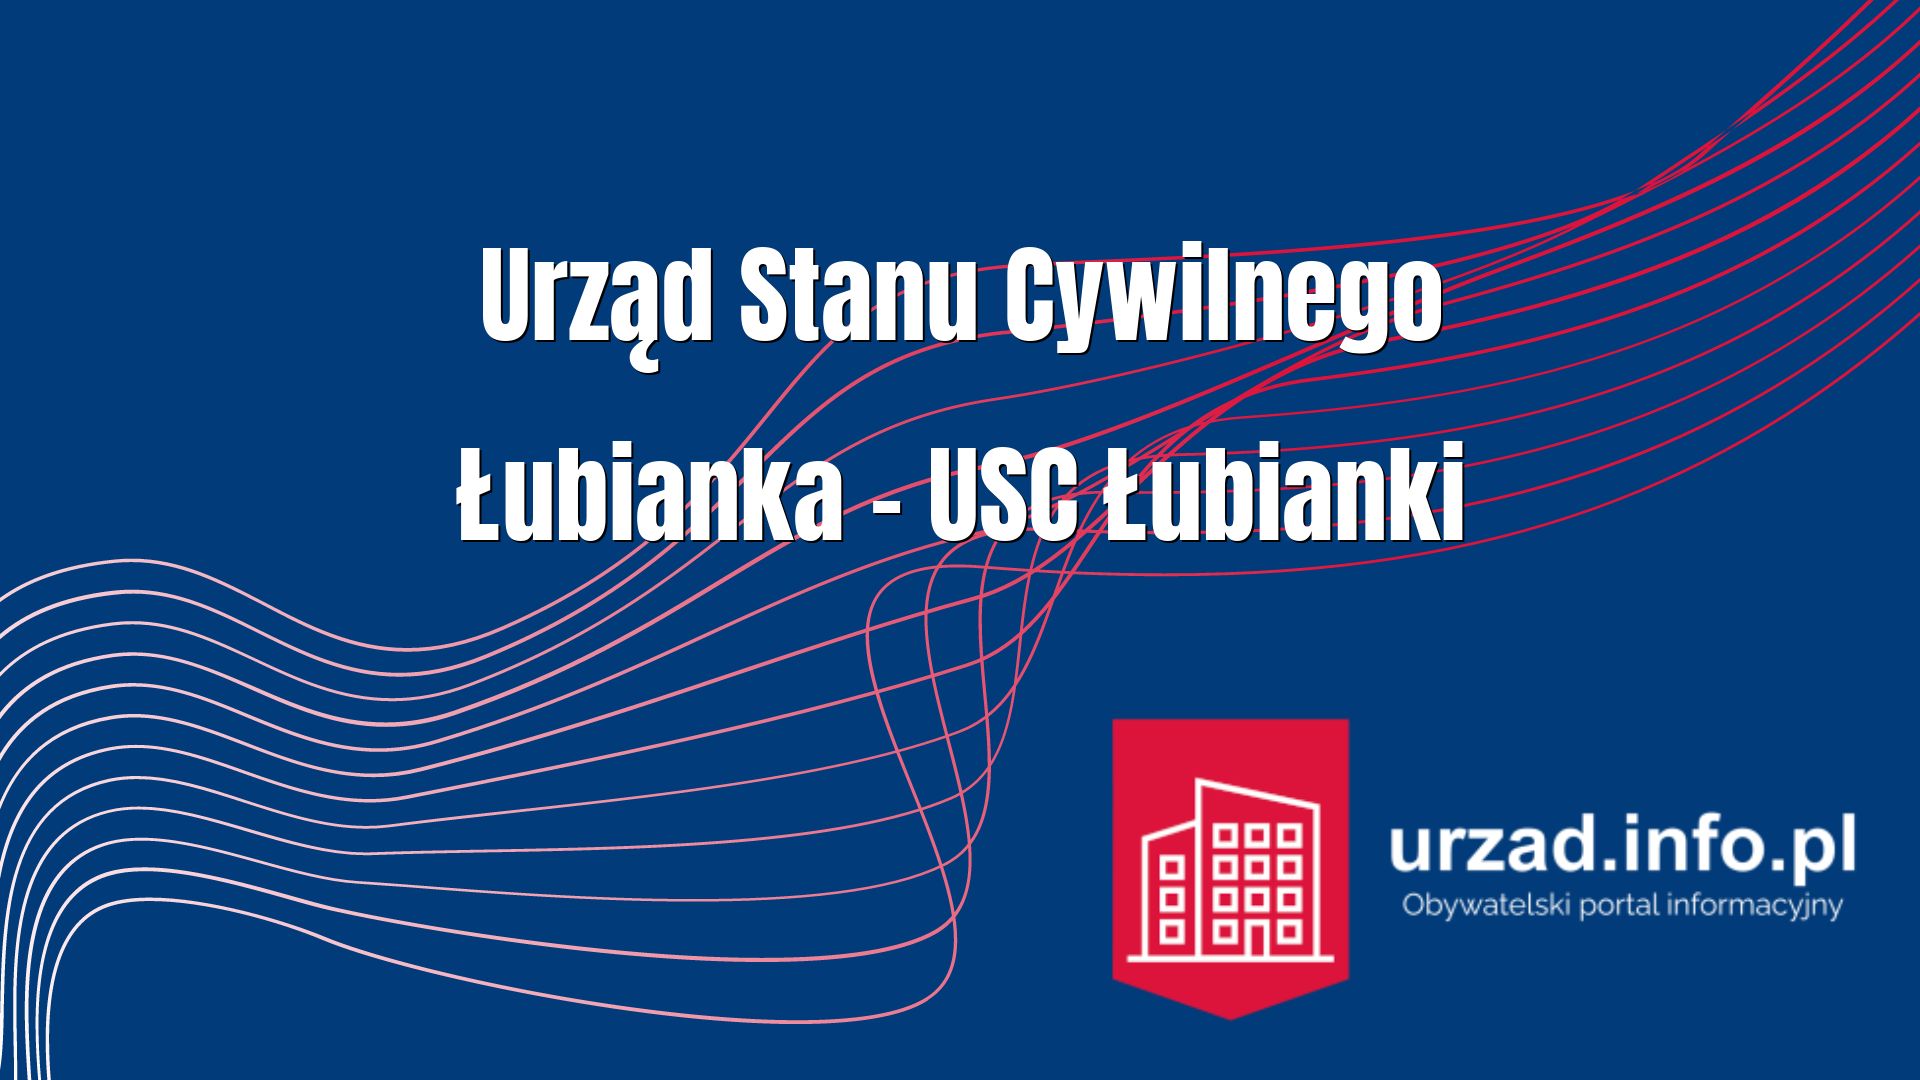 Urząd Stanu Cywilnego Łubianka – USC Łubianki